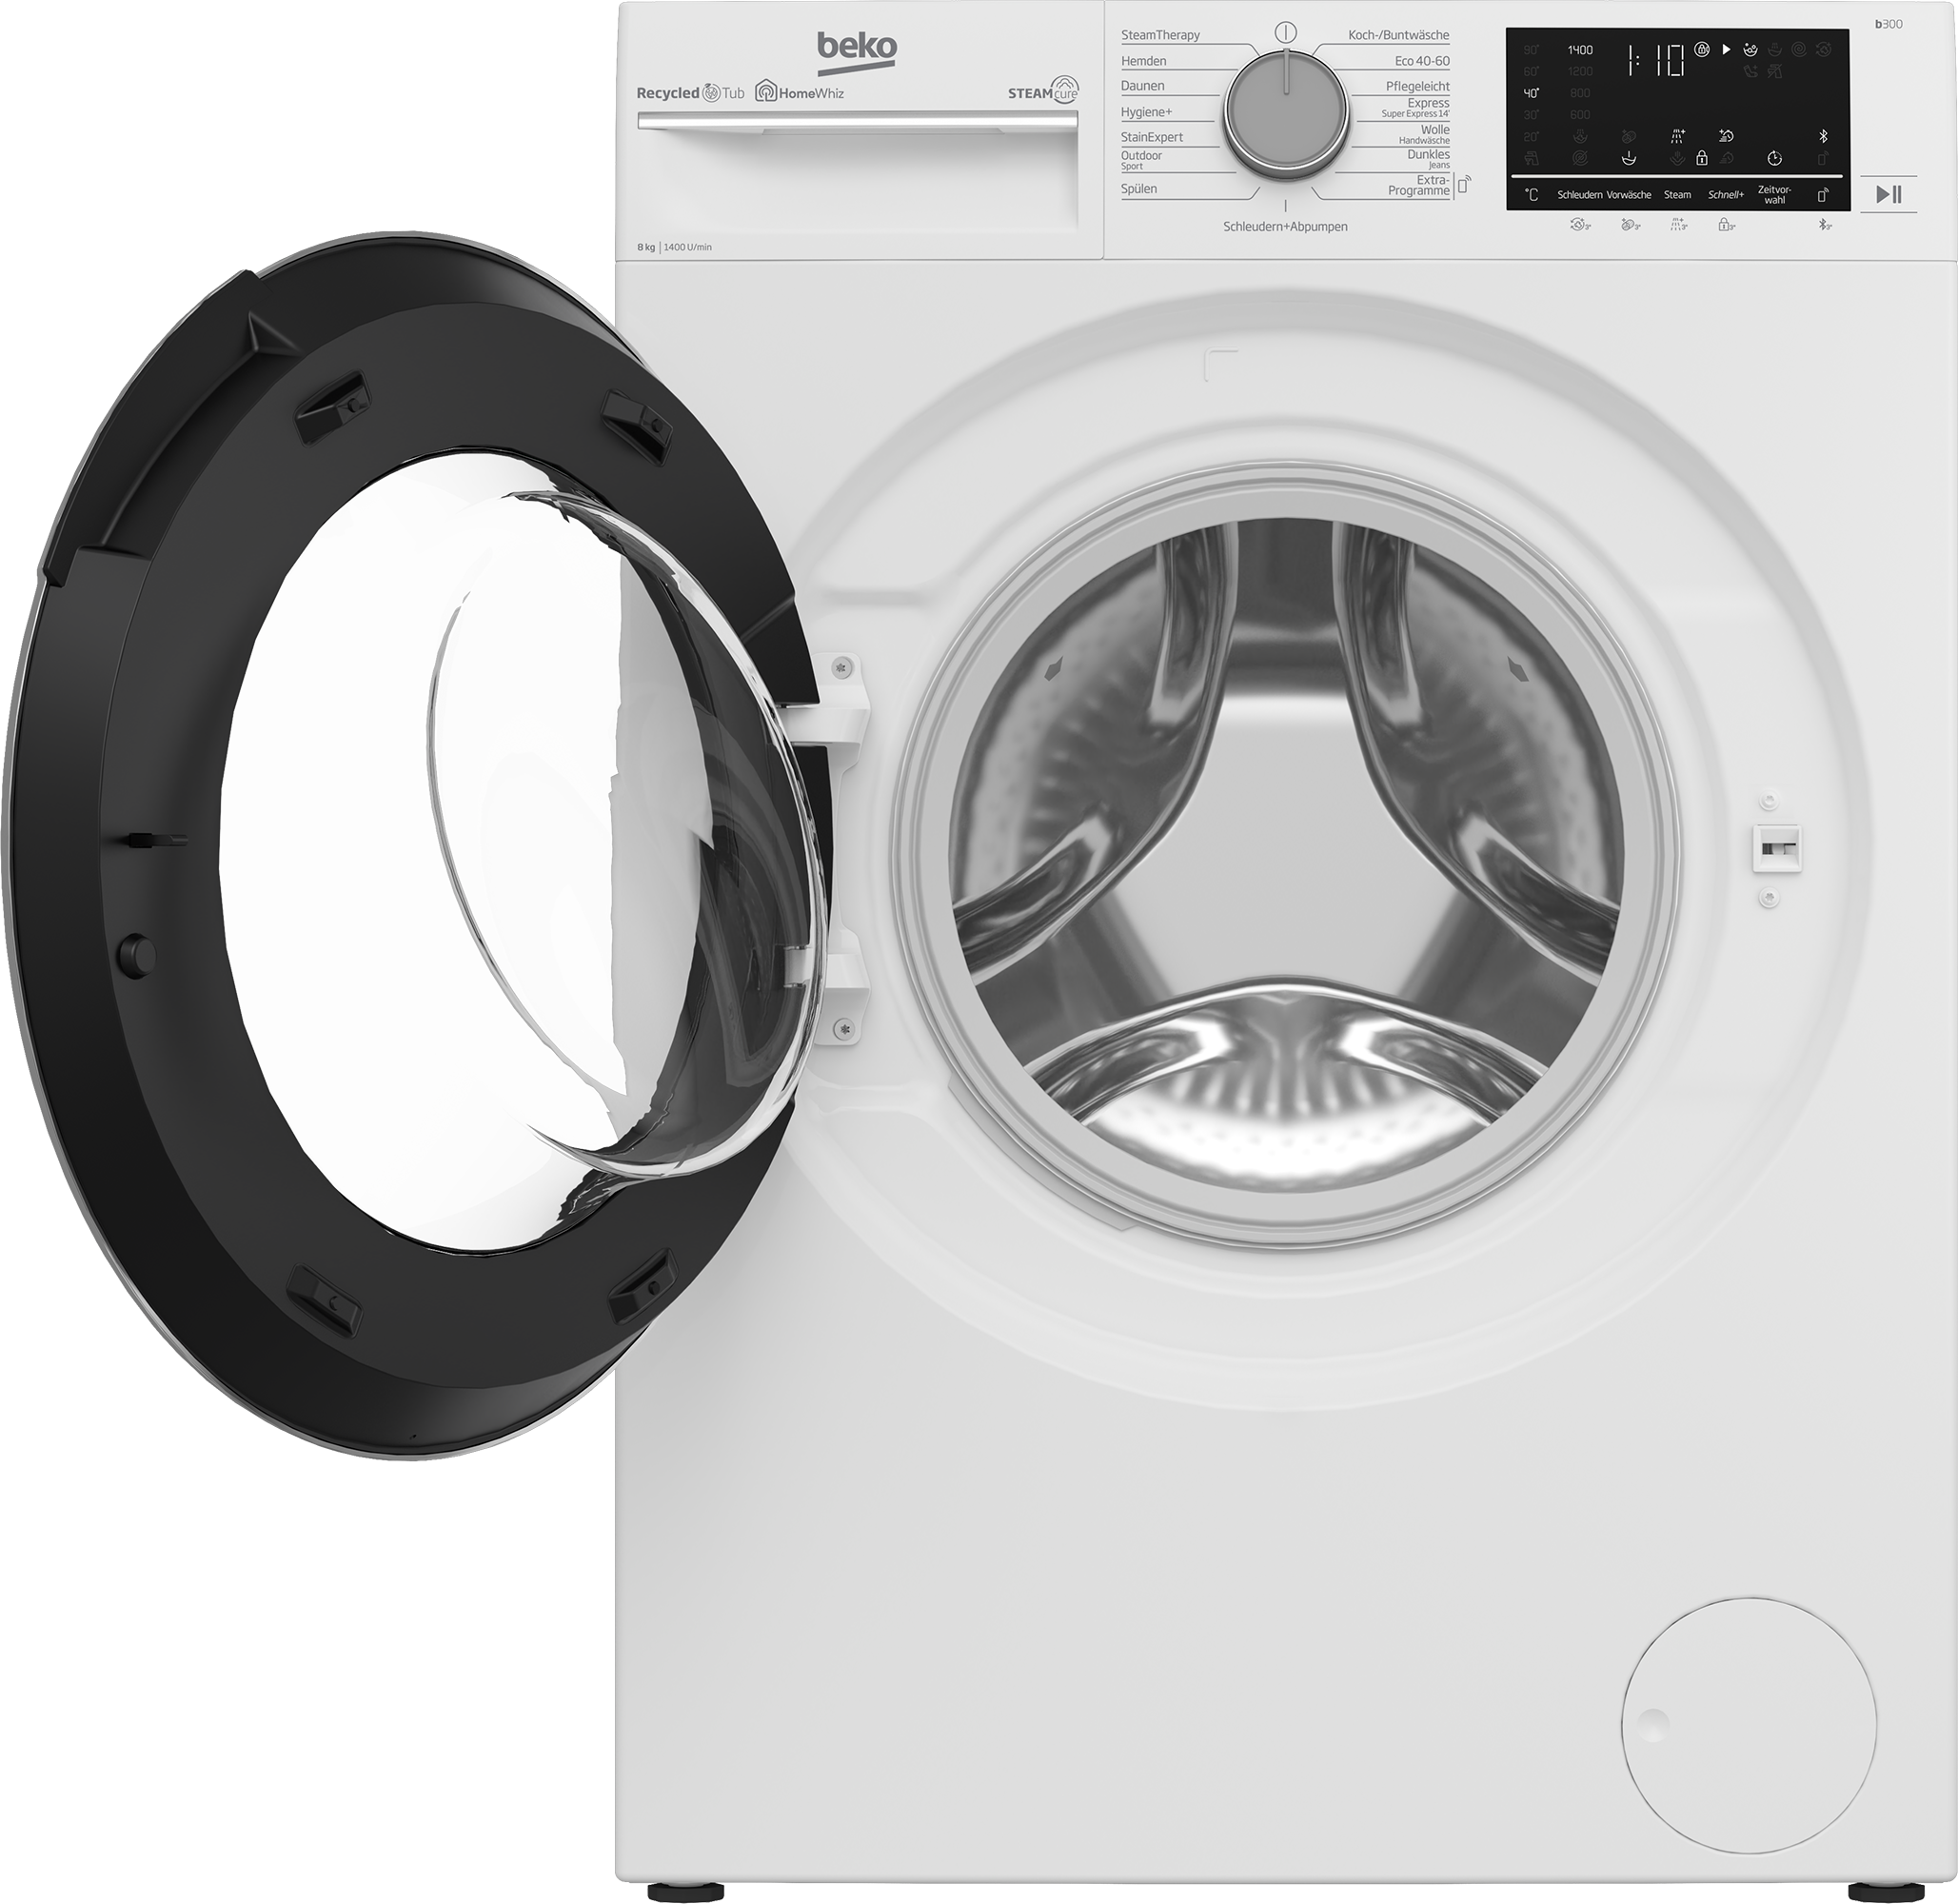 Waschmaschine, kaufen 1400 99% SteamCure B3WFU59415W2, U/min, allergenfrei 9 online - BEKO b300, kg,